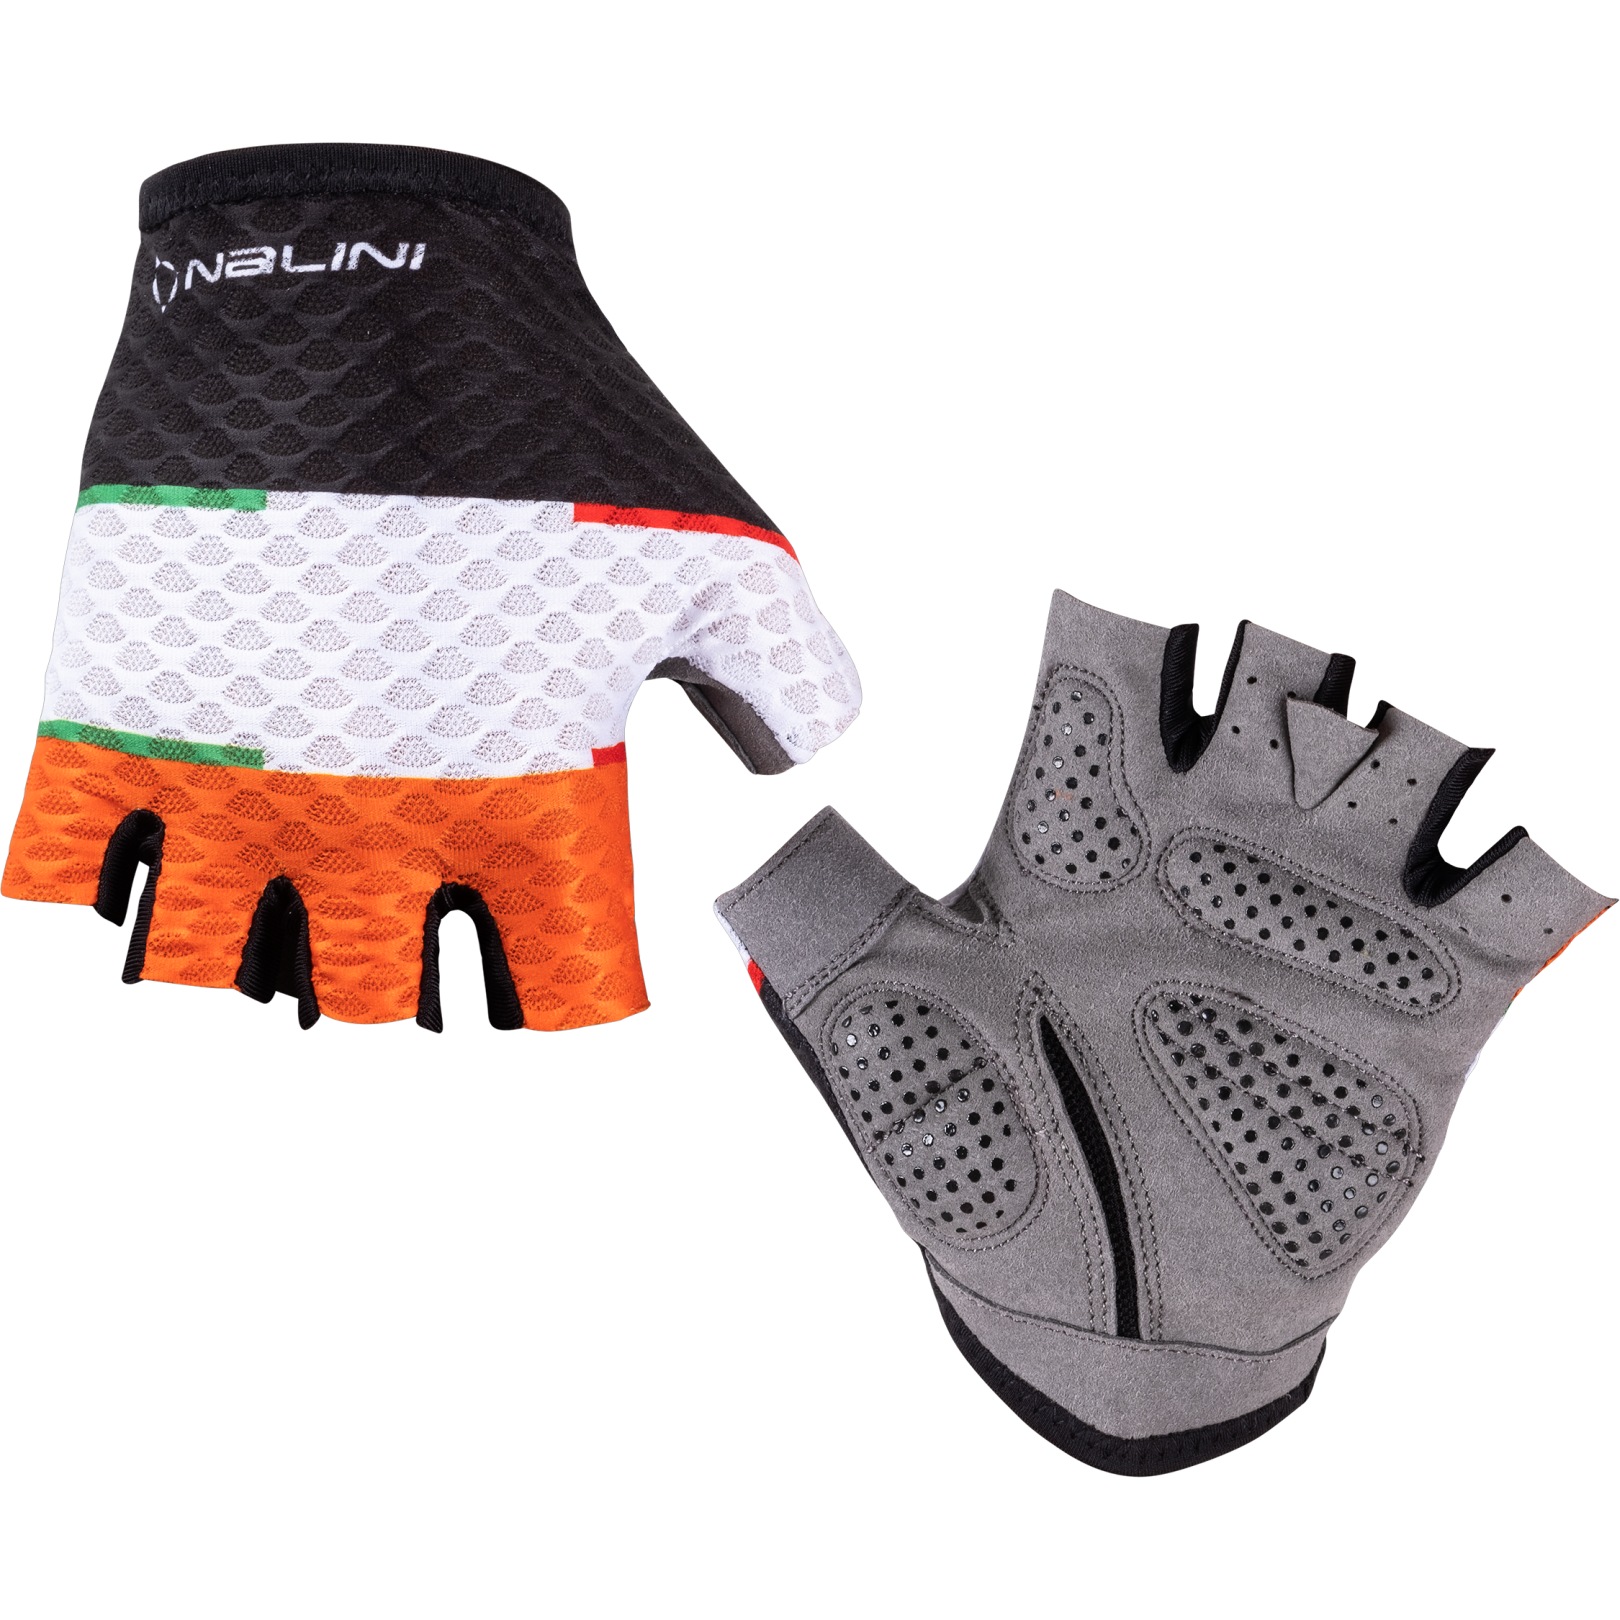 Productfoto van Nalini Summer Handschoenen met Korte Vingers - oranje/zwart 4150